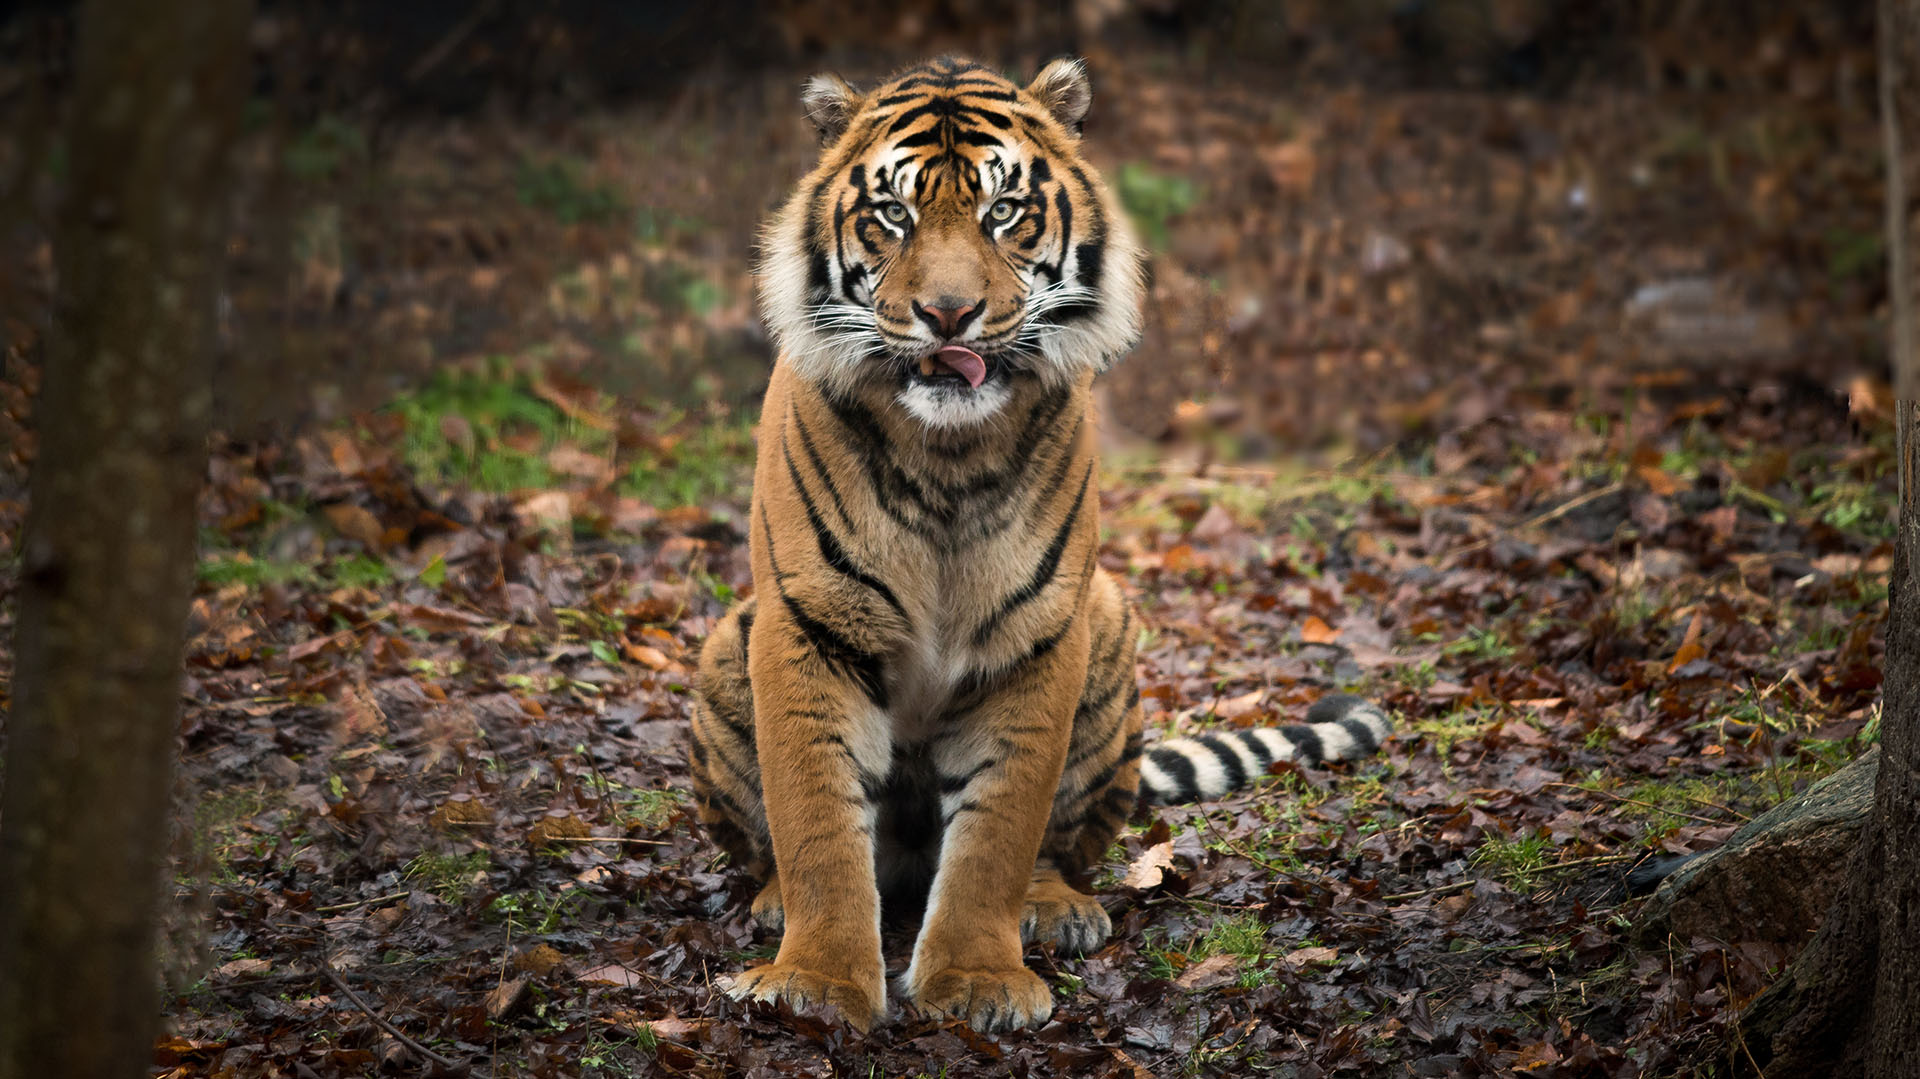 El tigre de Sumatra está bajo una gran presión debido a la caza furtiva y la reducción del hábitat de la jungla (Getty Images)